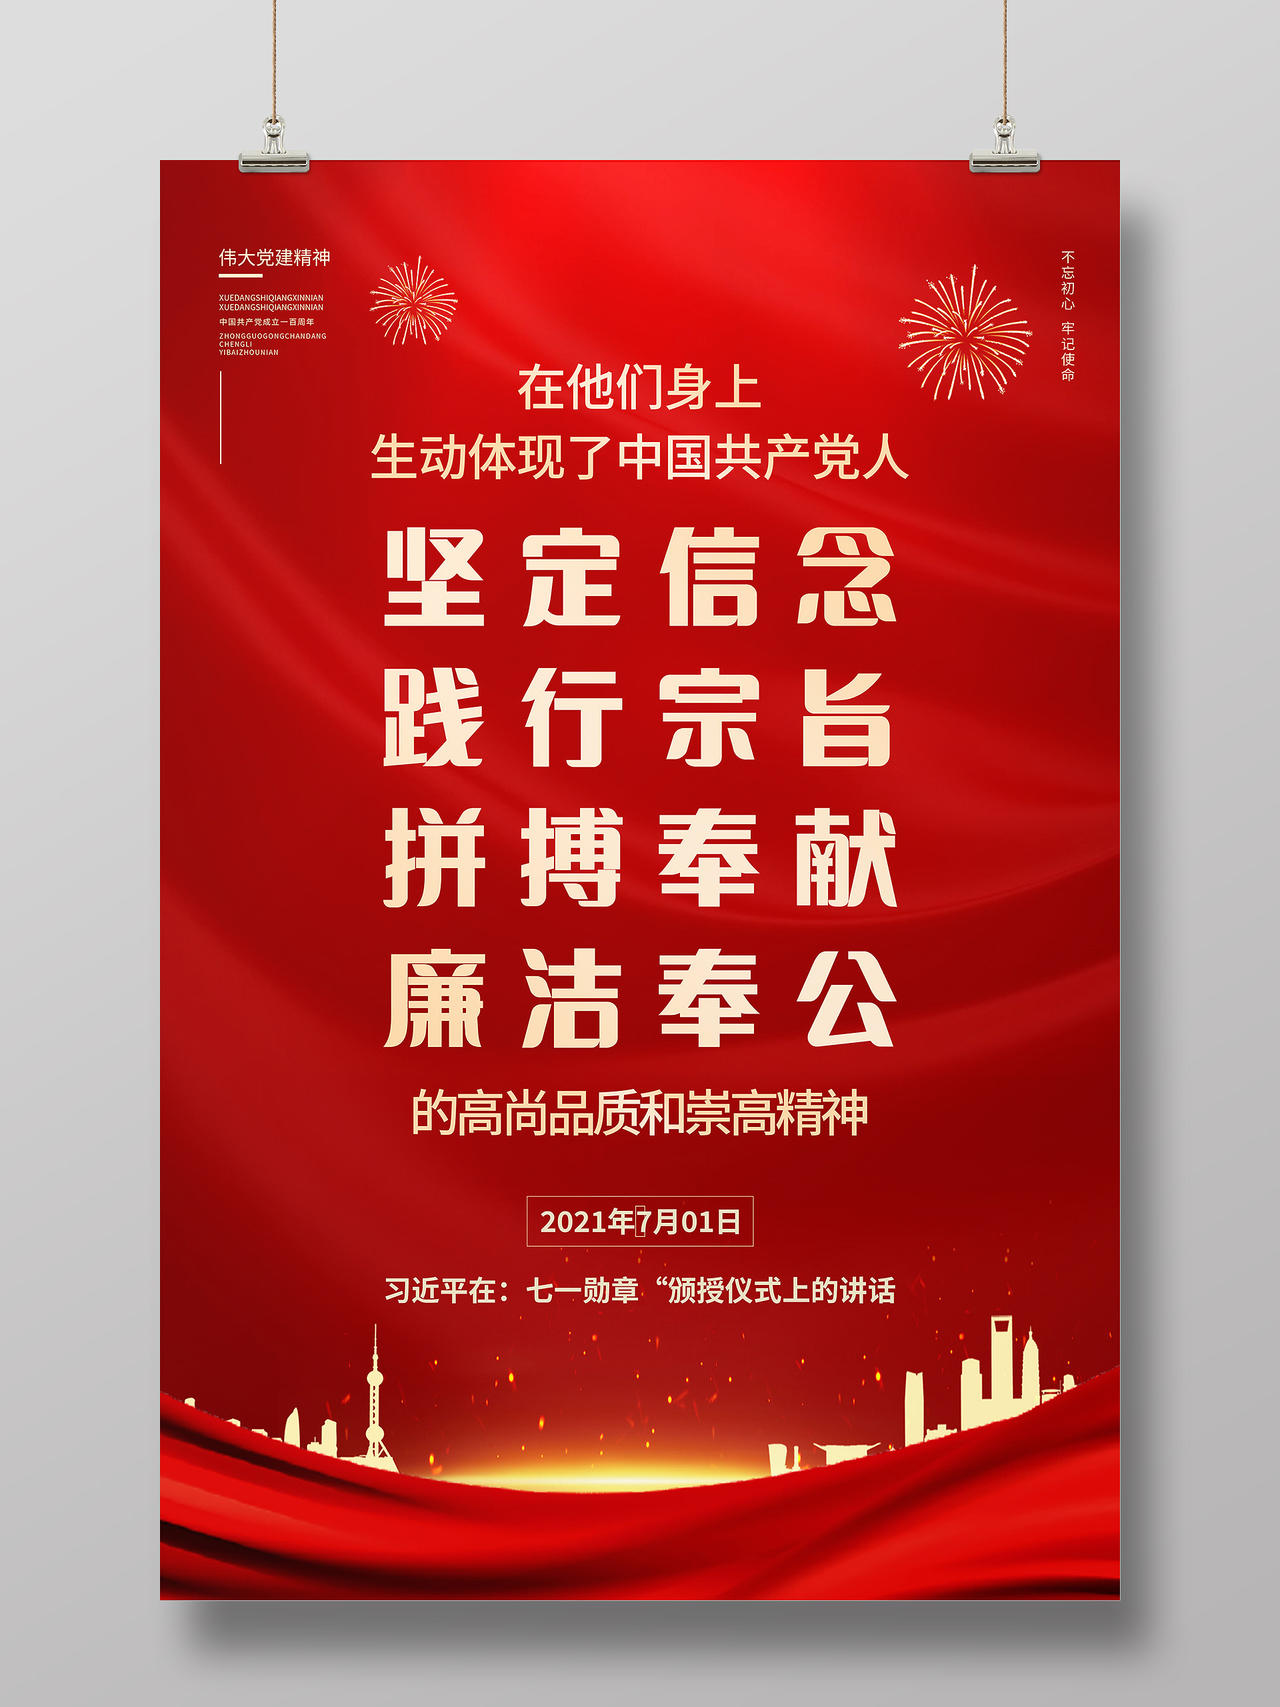 庆祝中国共产党成立100周年大会讲话金句宣传海报党建七一讲话金句